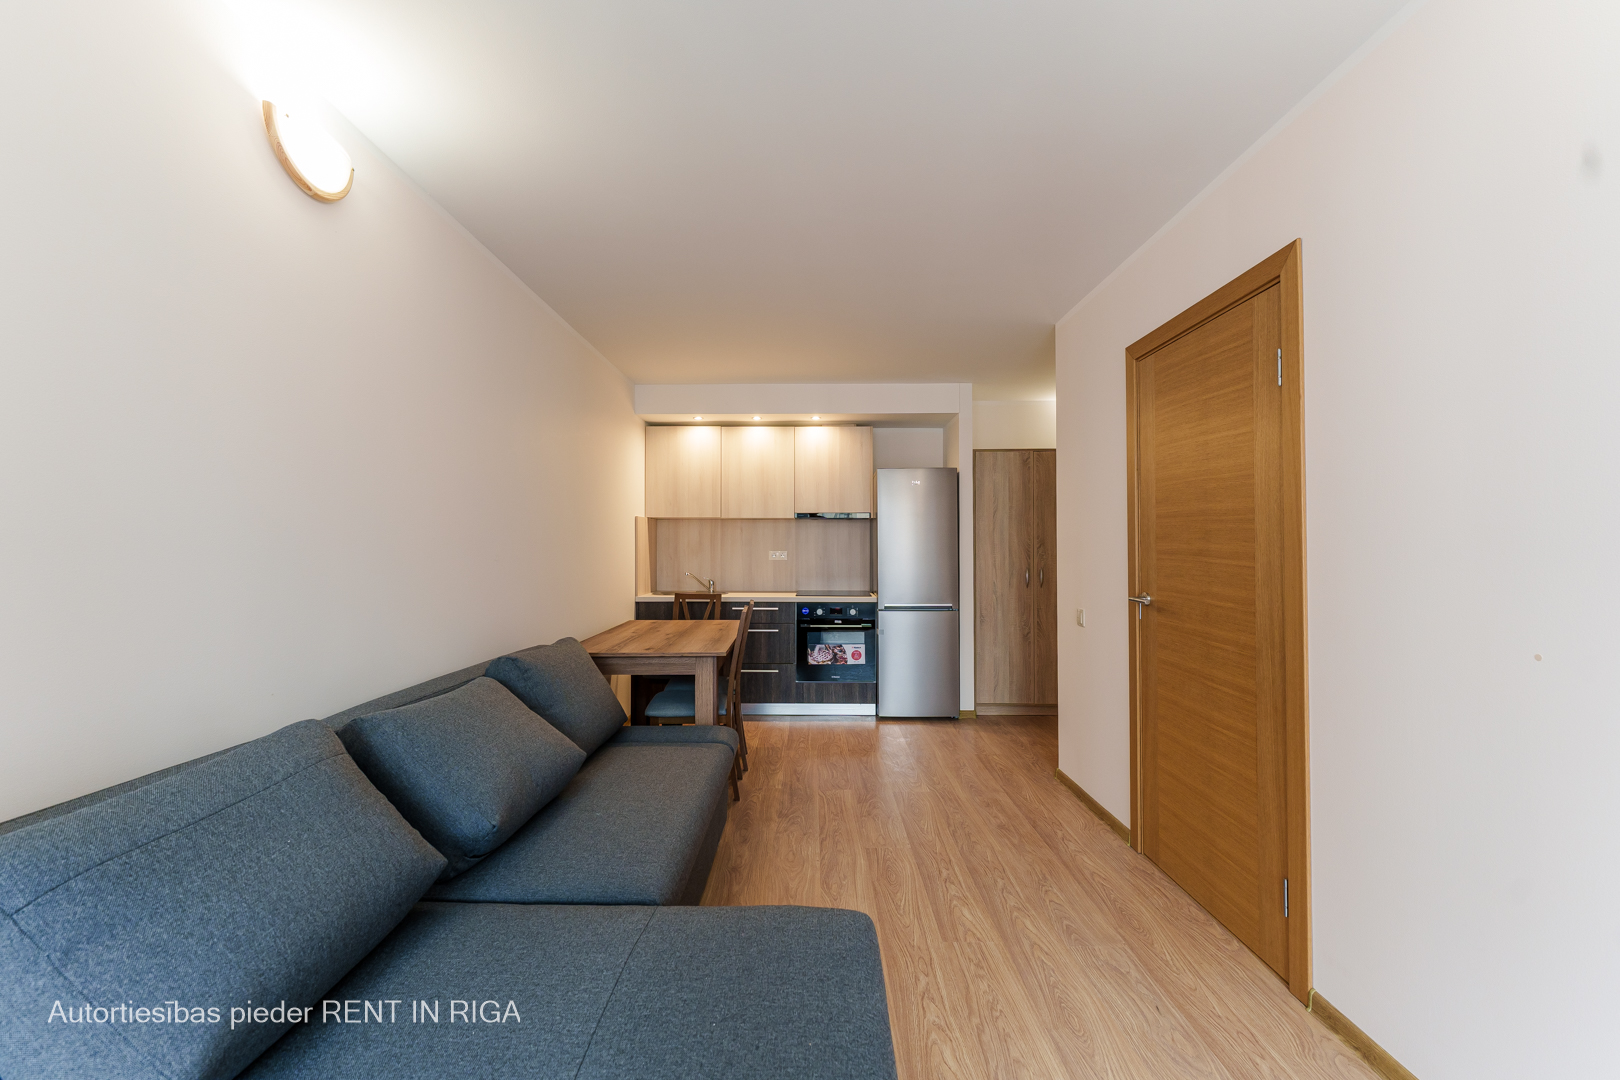 Apartment for rent, Firsa Sadovņikova street 31 - Image 1